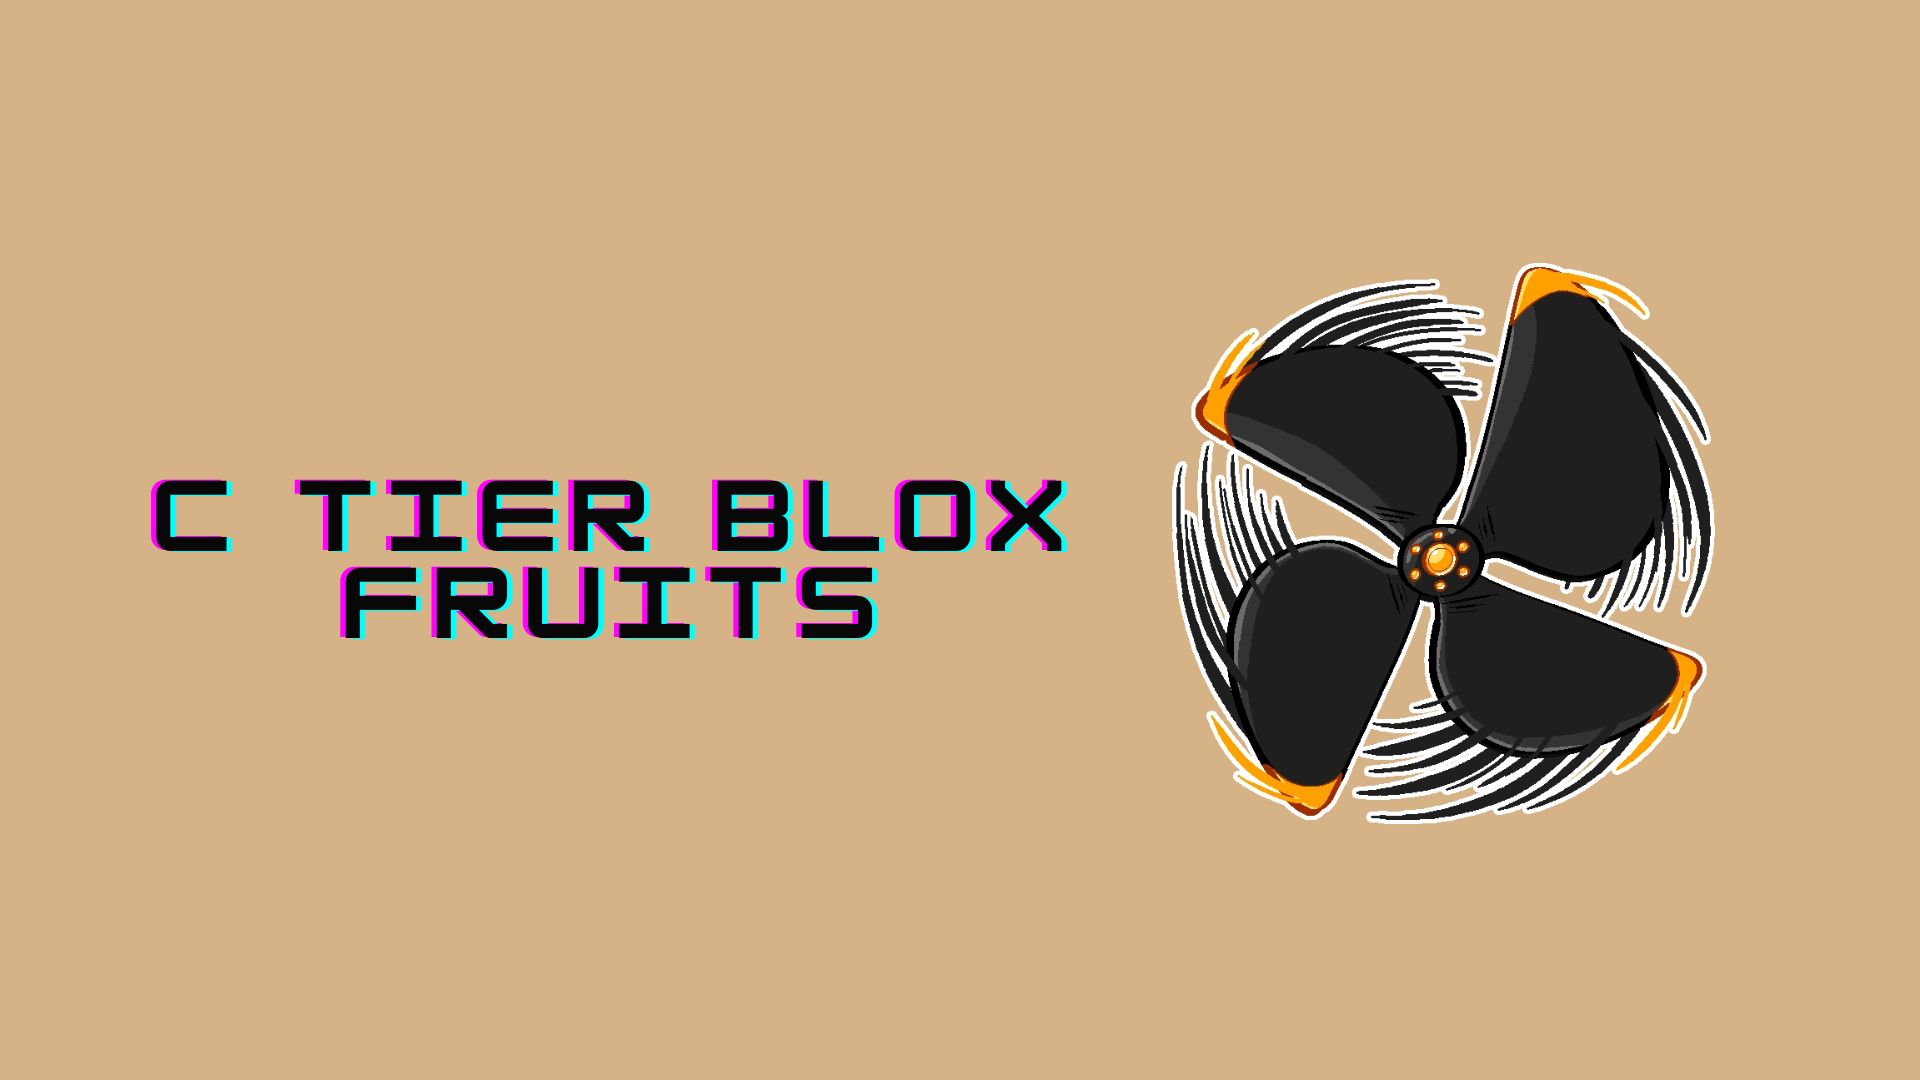 Elenco dei livelli dei frutti Blox